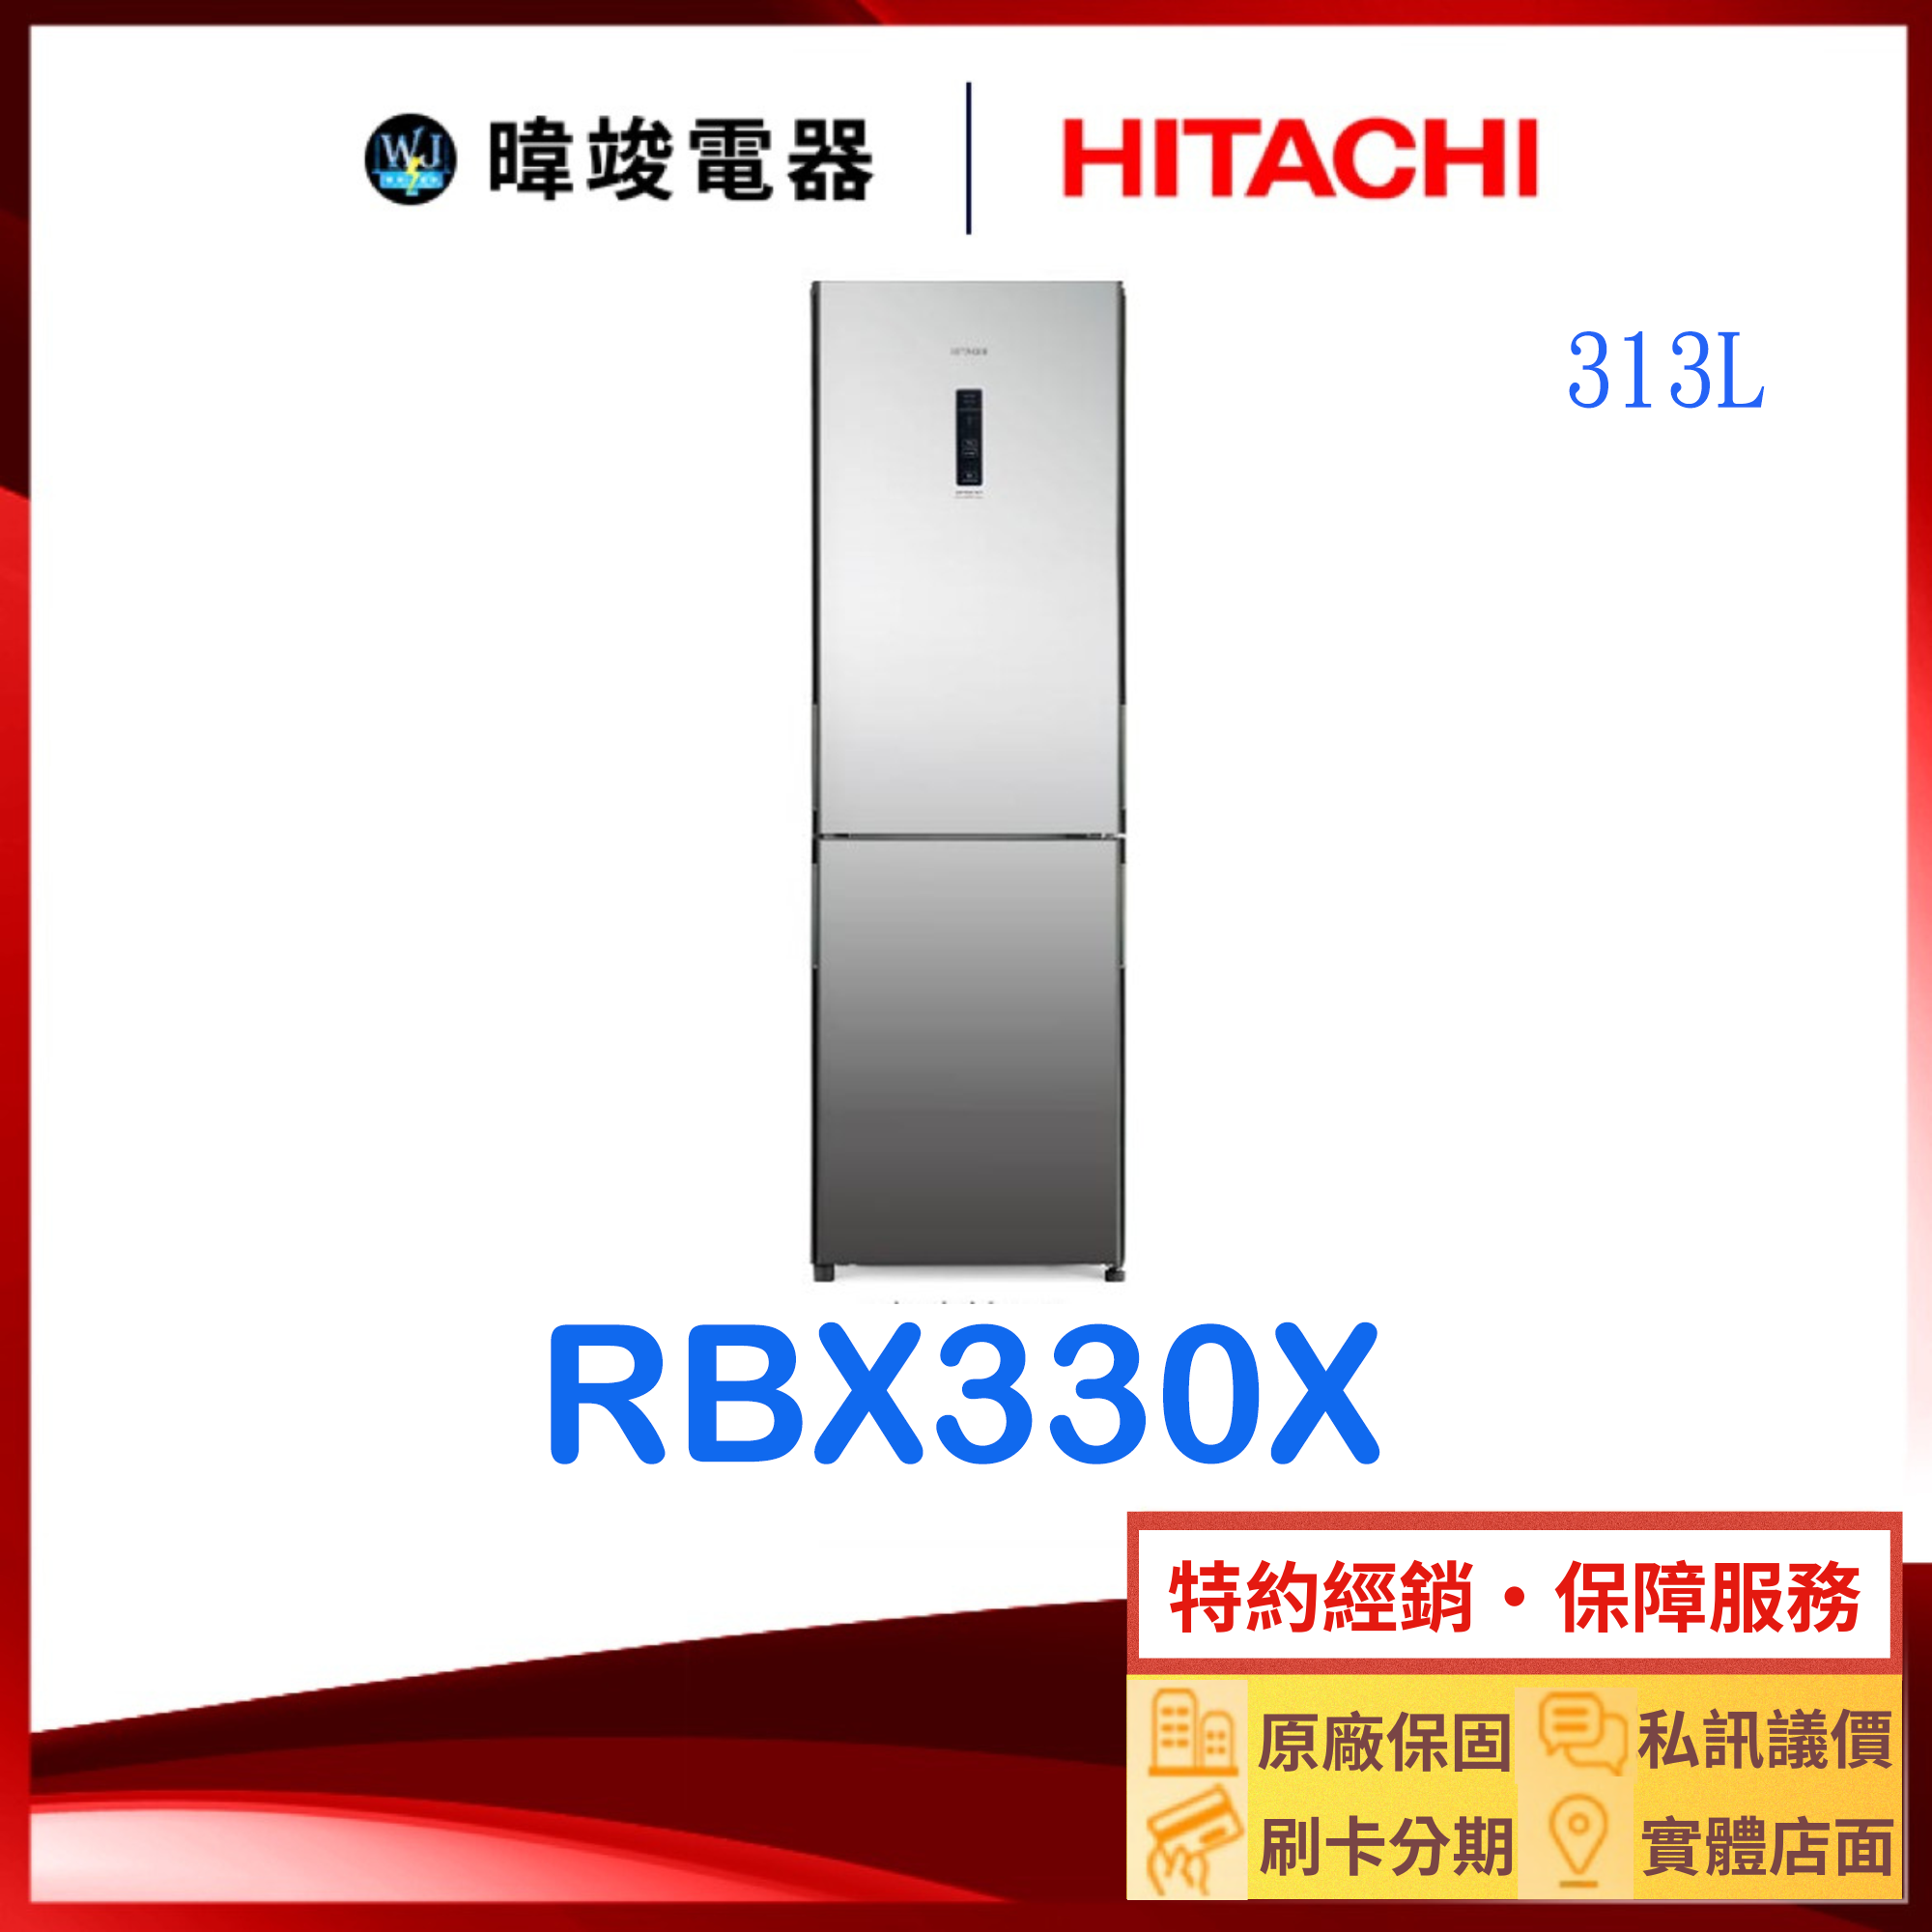 現貨【獨家折扣碼】HITACHI日立 RBX330-X 雙門冰箱 琉璃鏡 右開 冰箱 RBX330X 日立冰箱